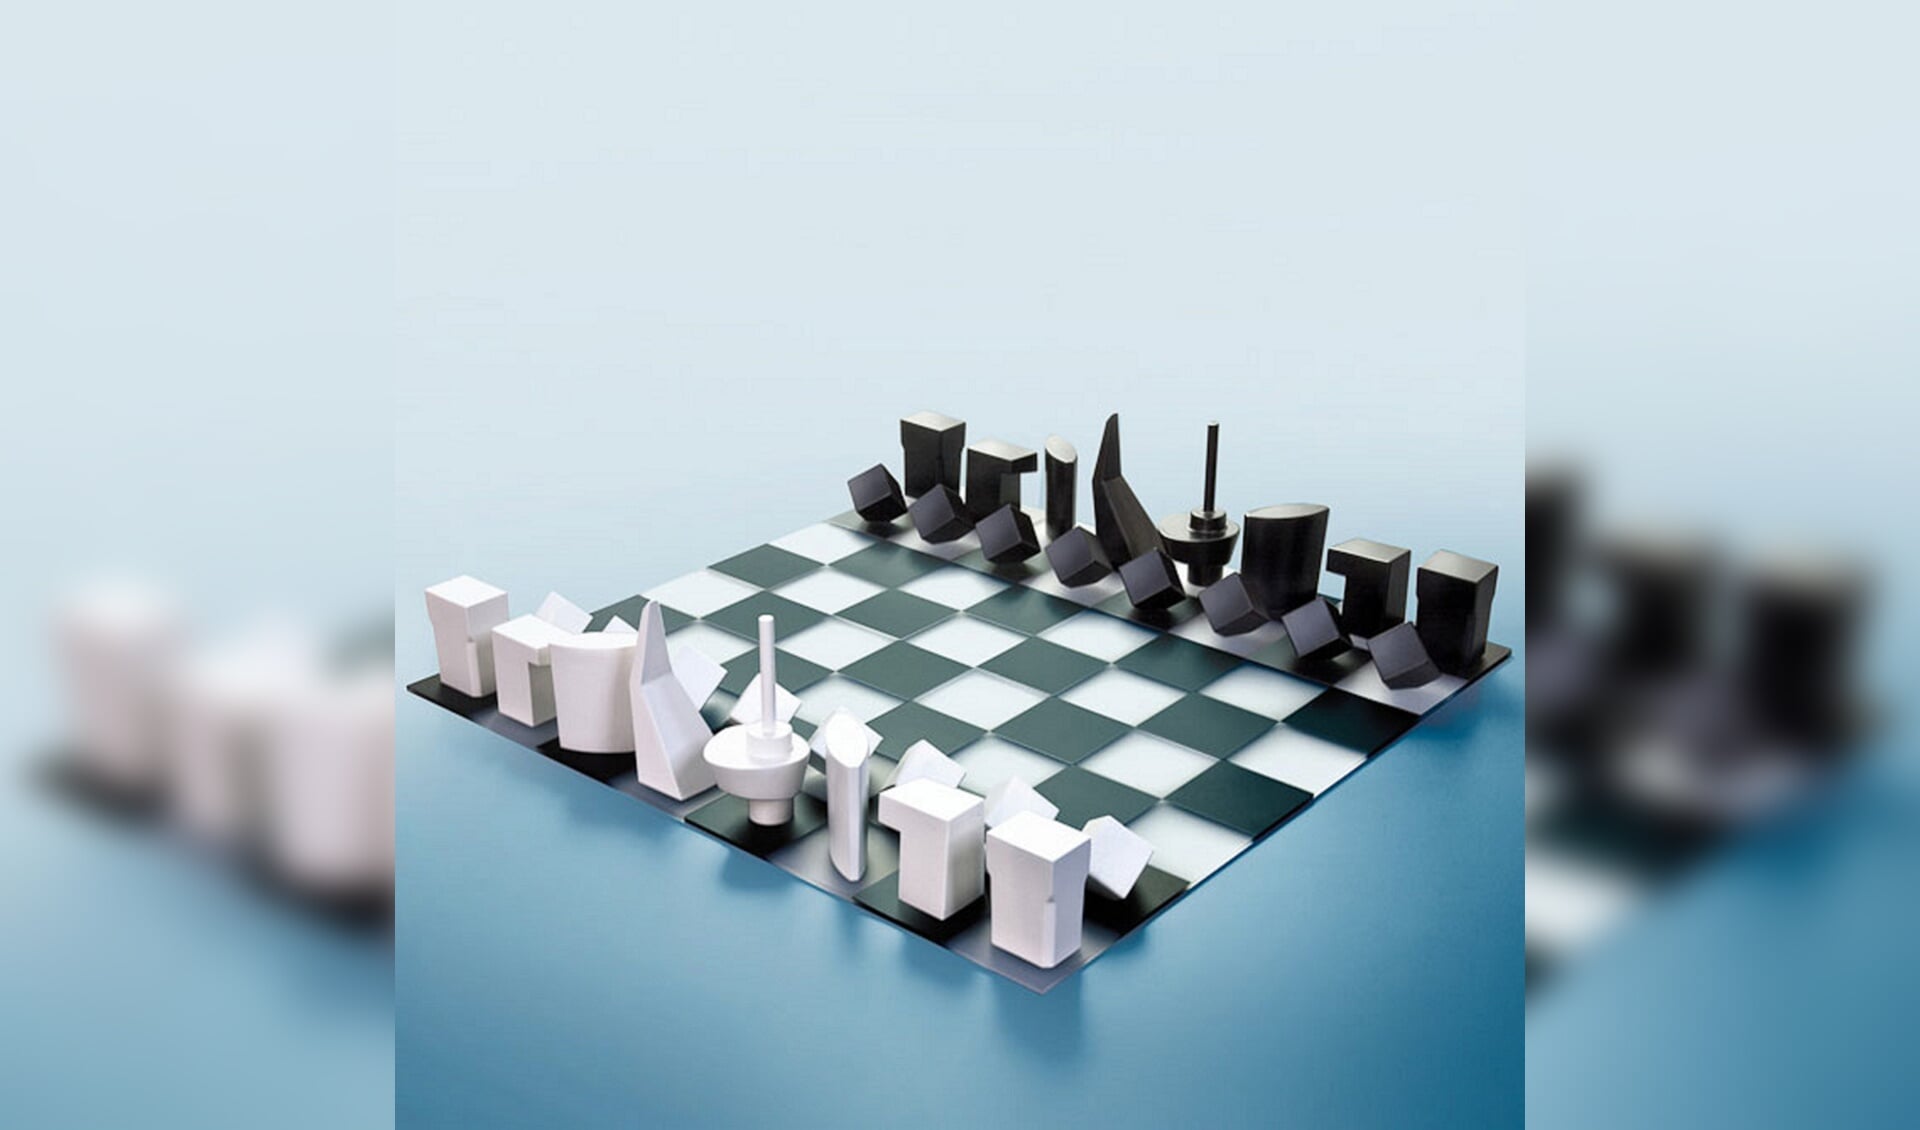 Het Rotterdamse schaakspel.